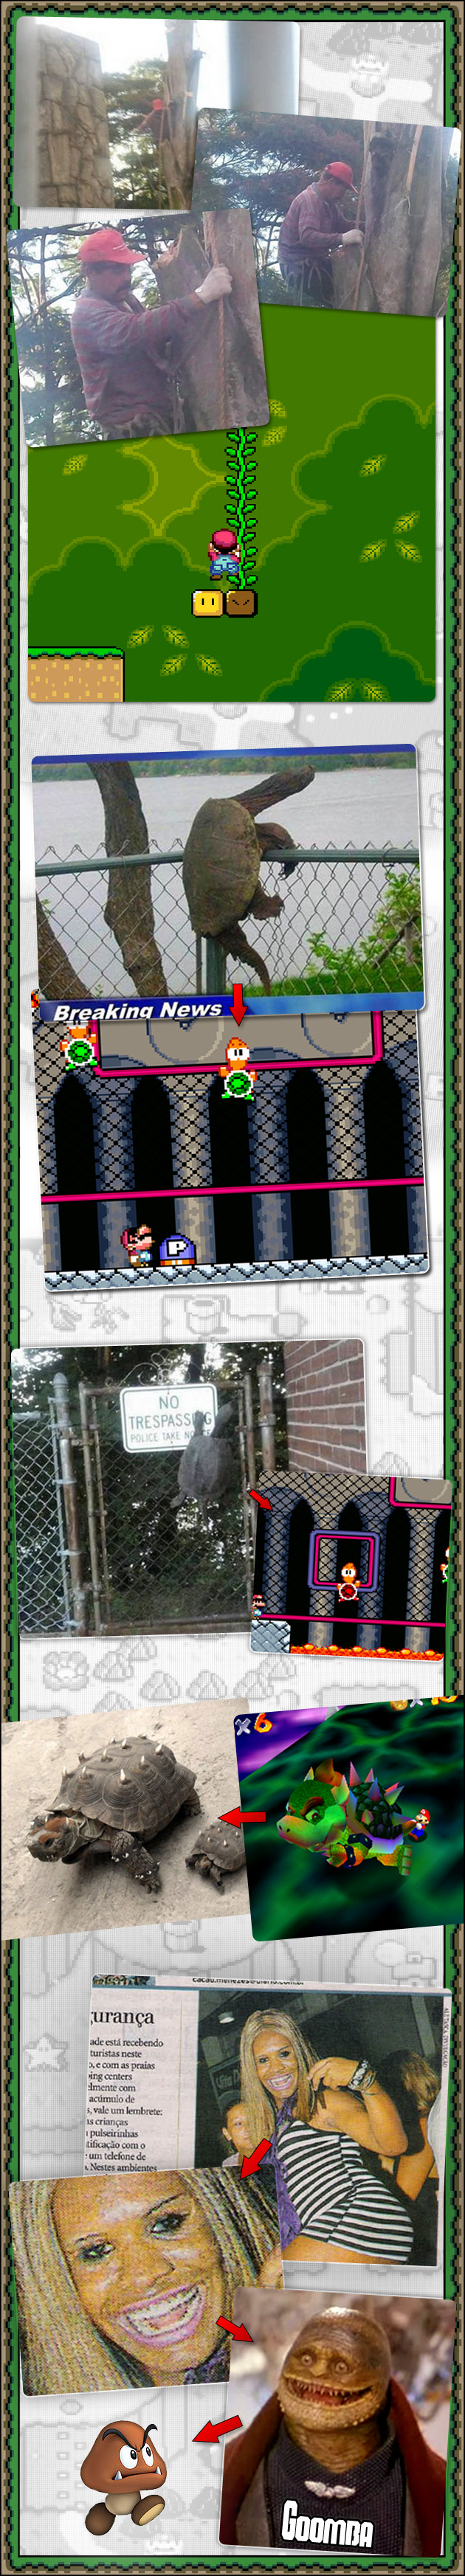 MARIO REAL Mario: Um jogo baseado na realidade